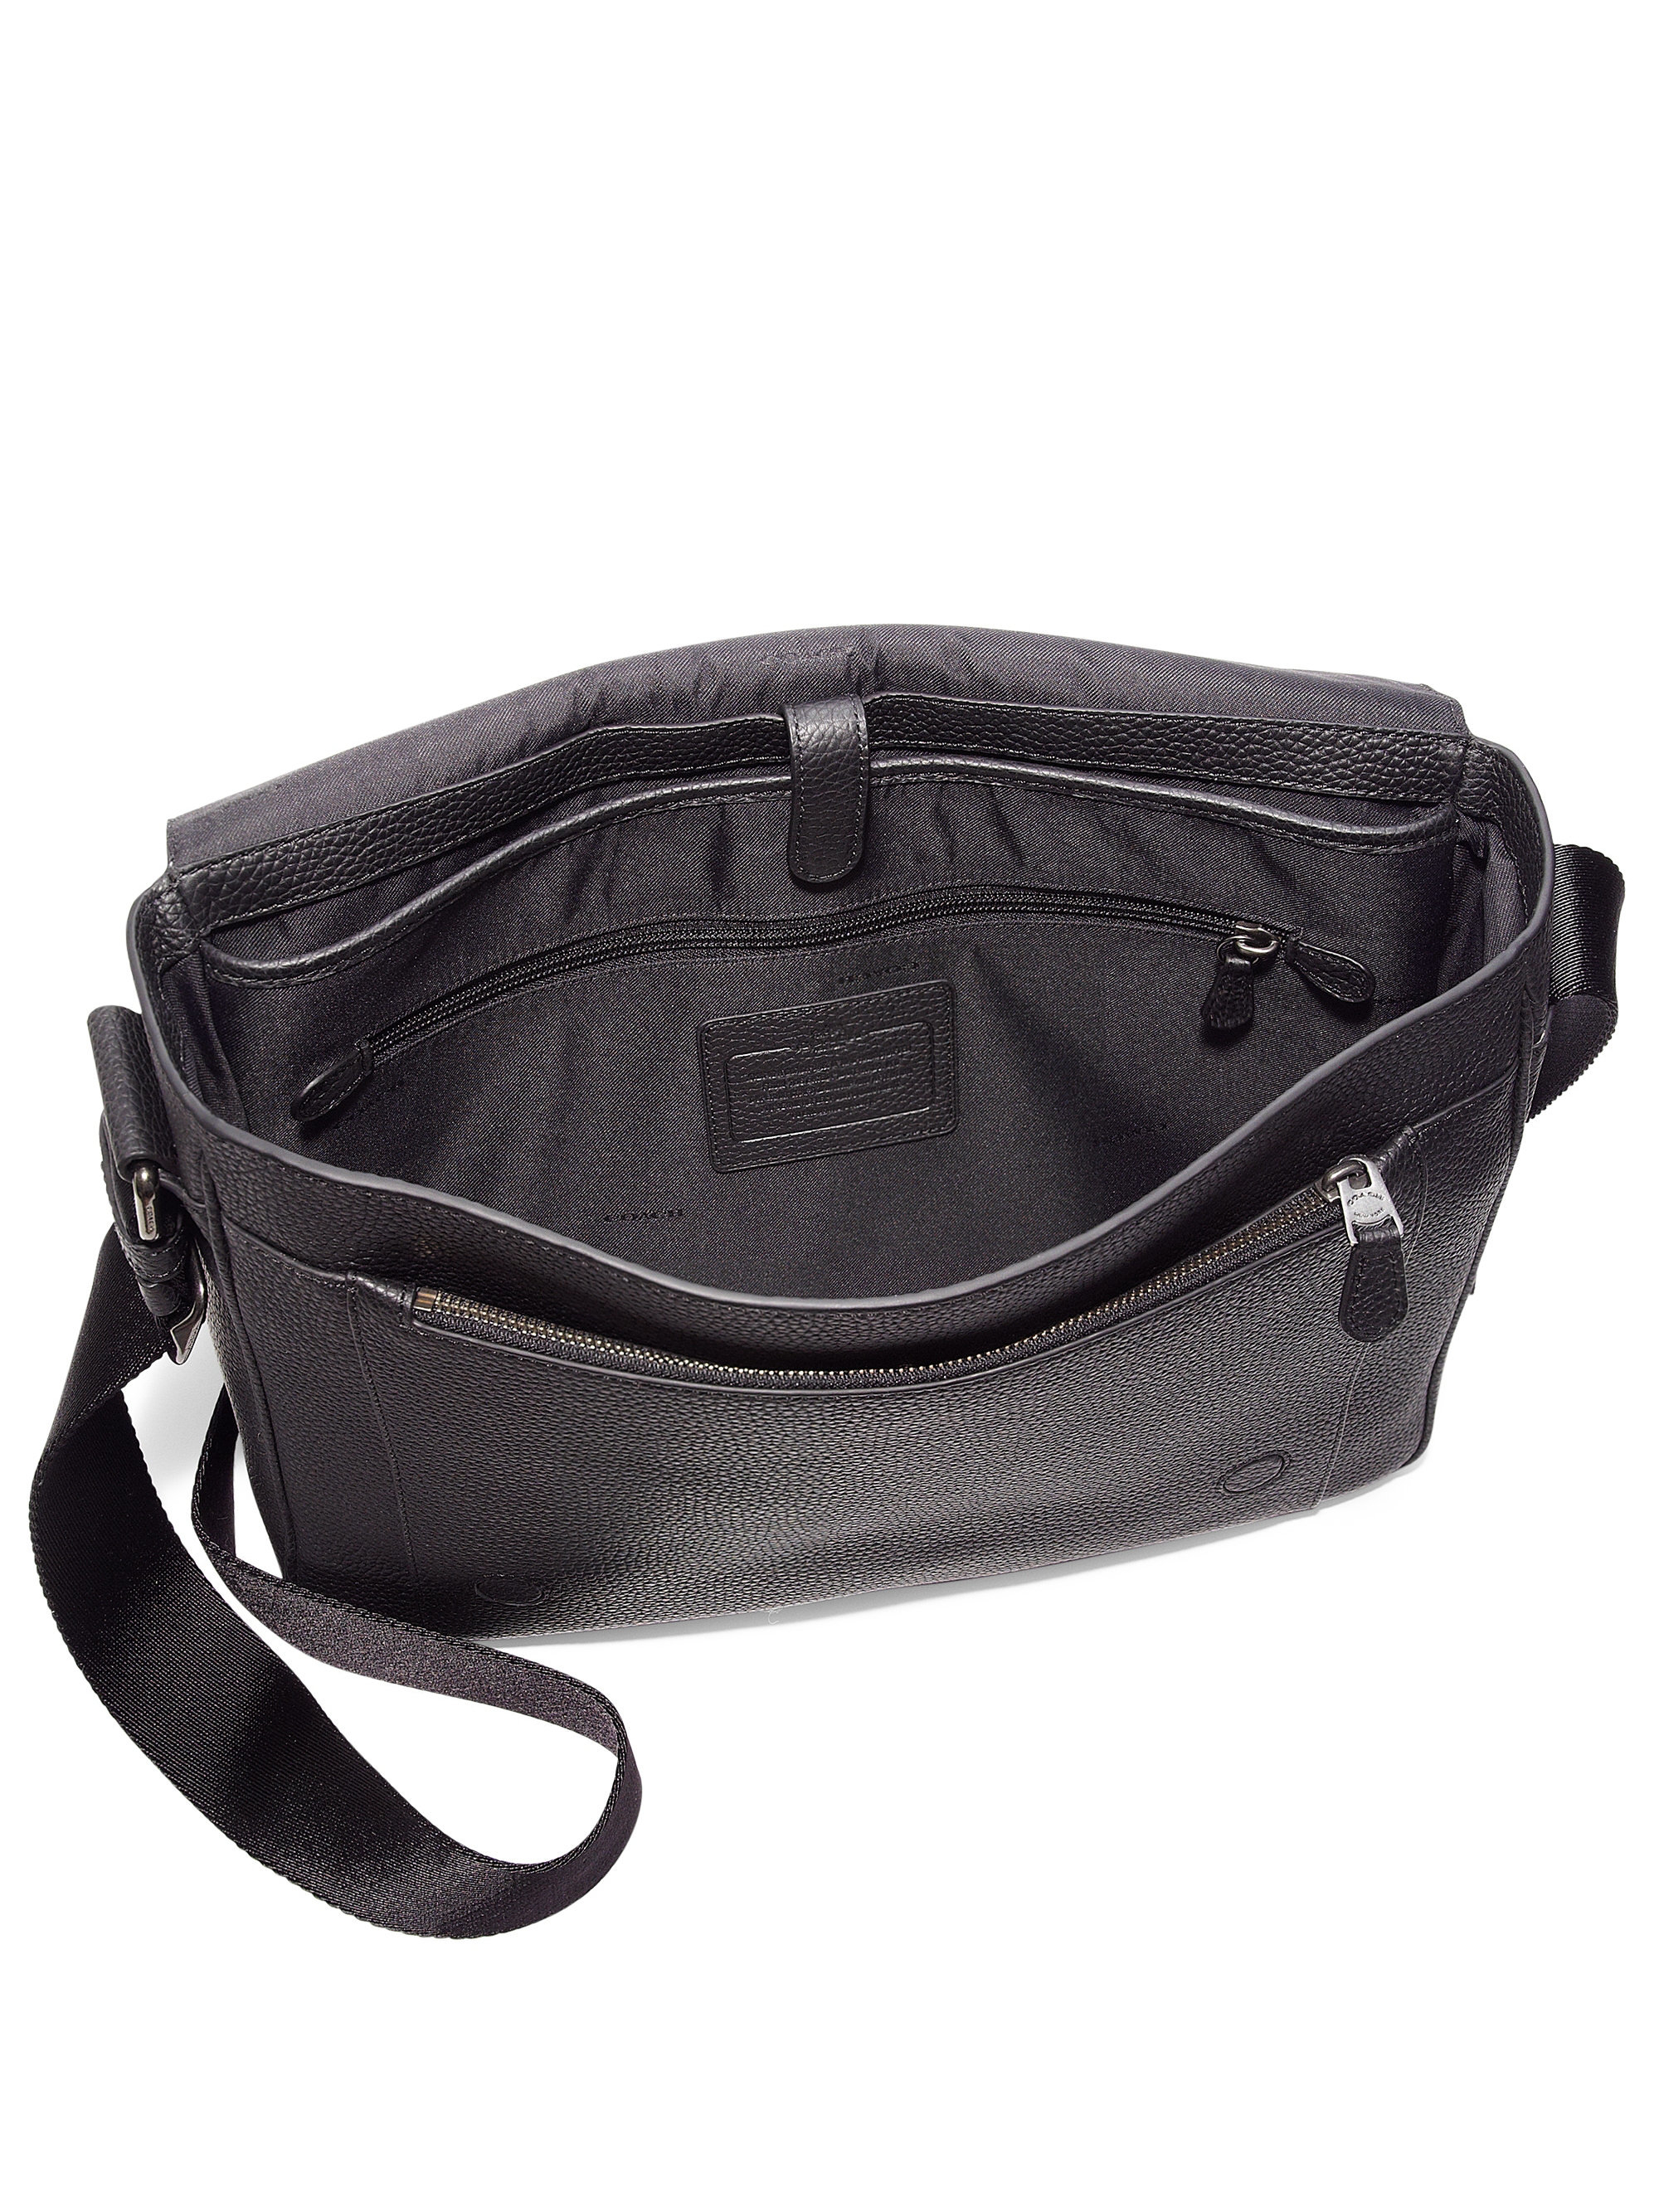 Coach Metropolitan Pebbled Leather Messenger Bag in Black for Men | Lyst